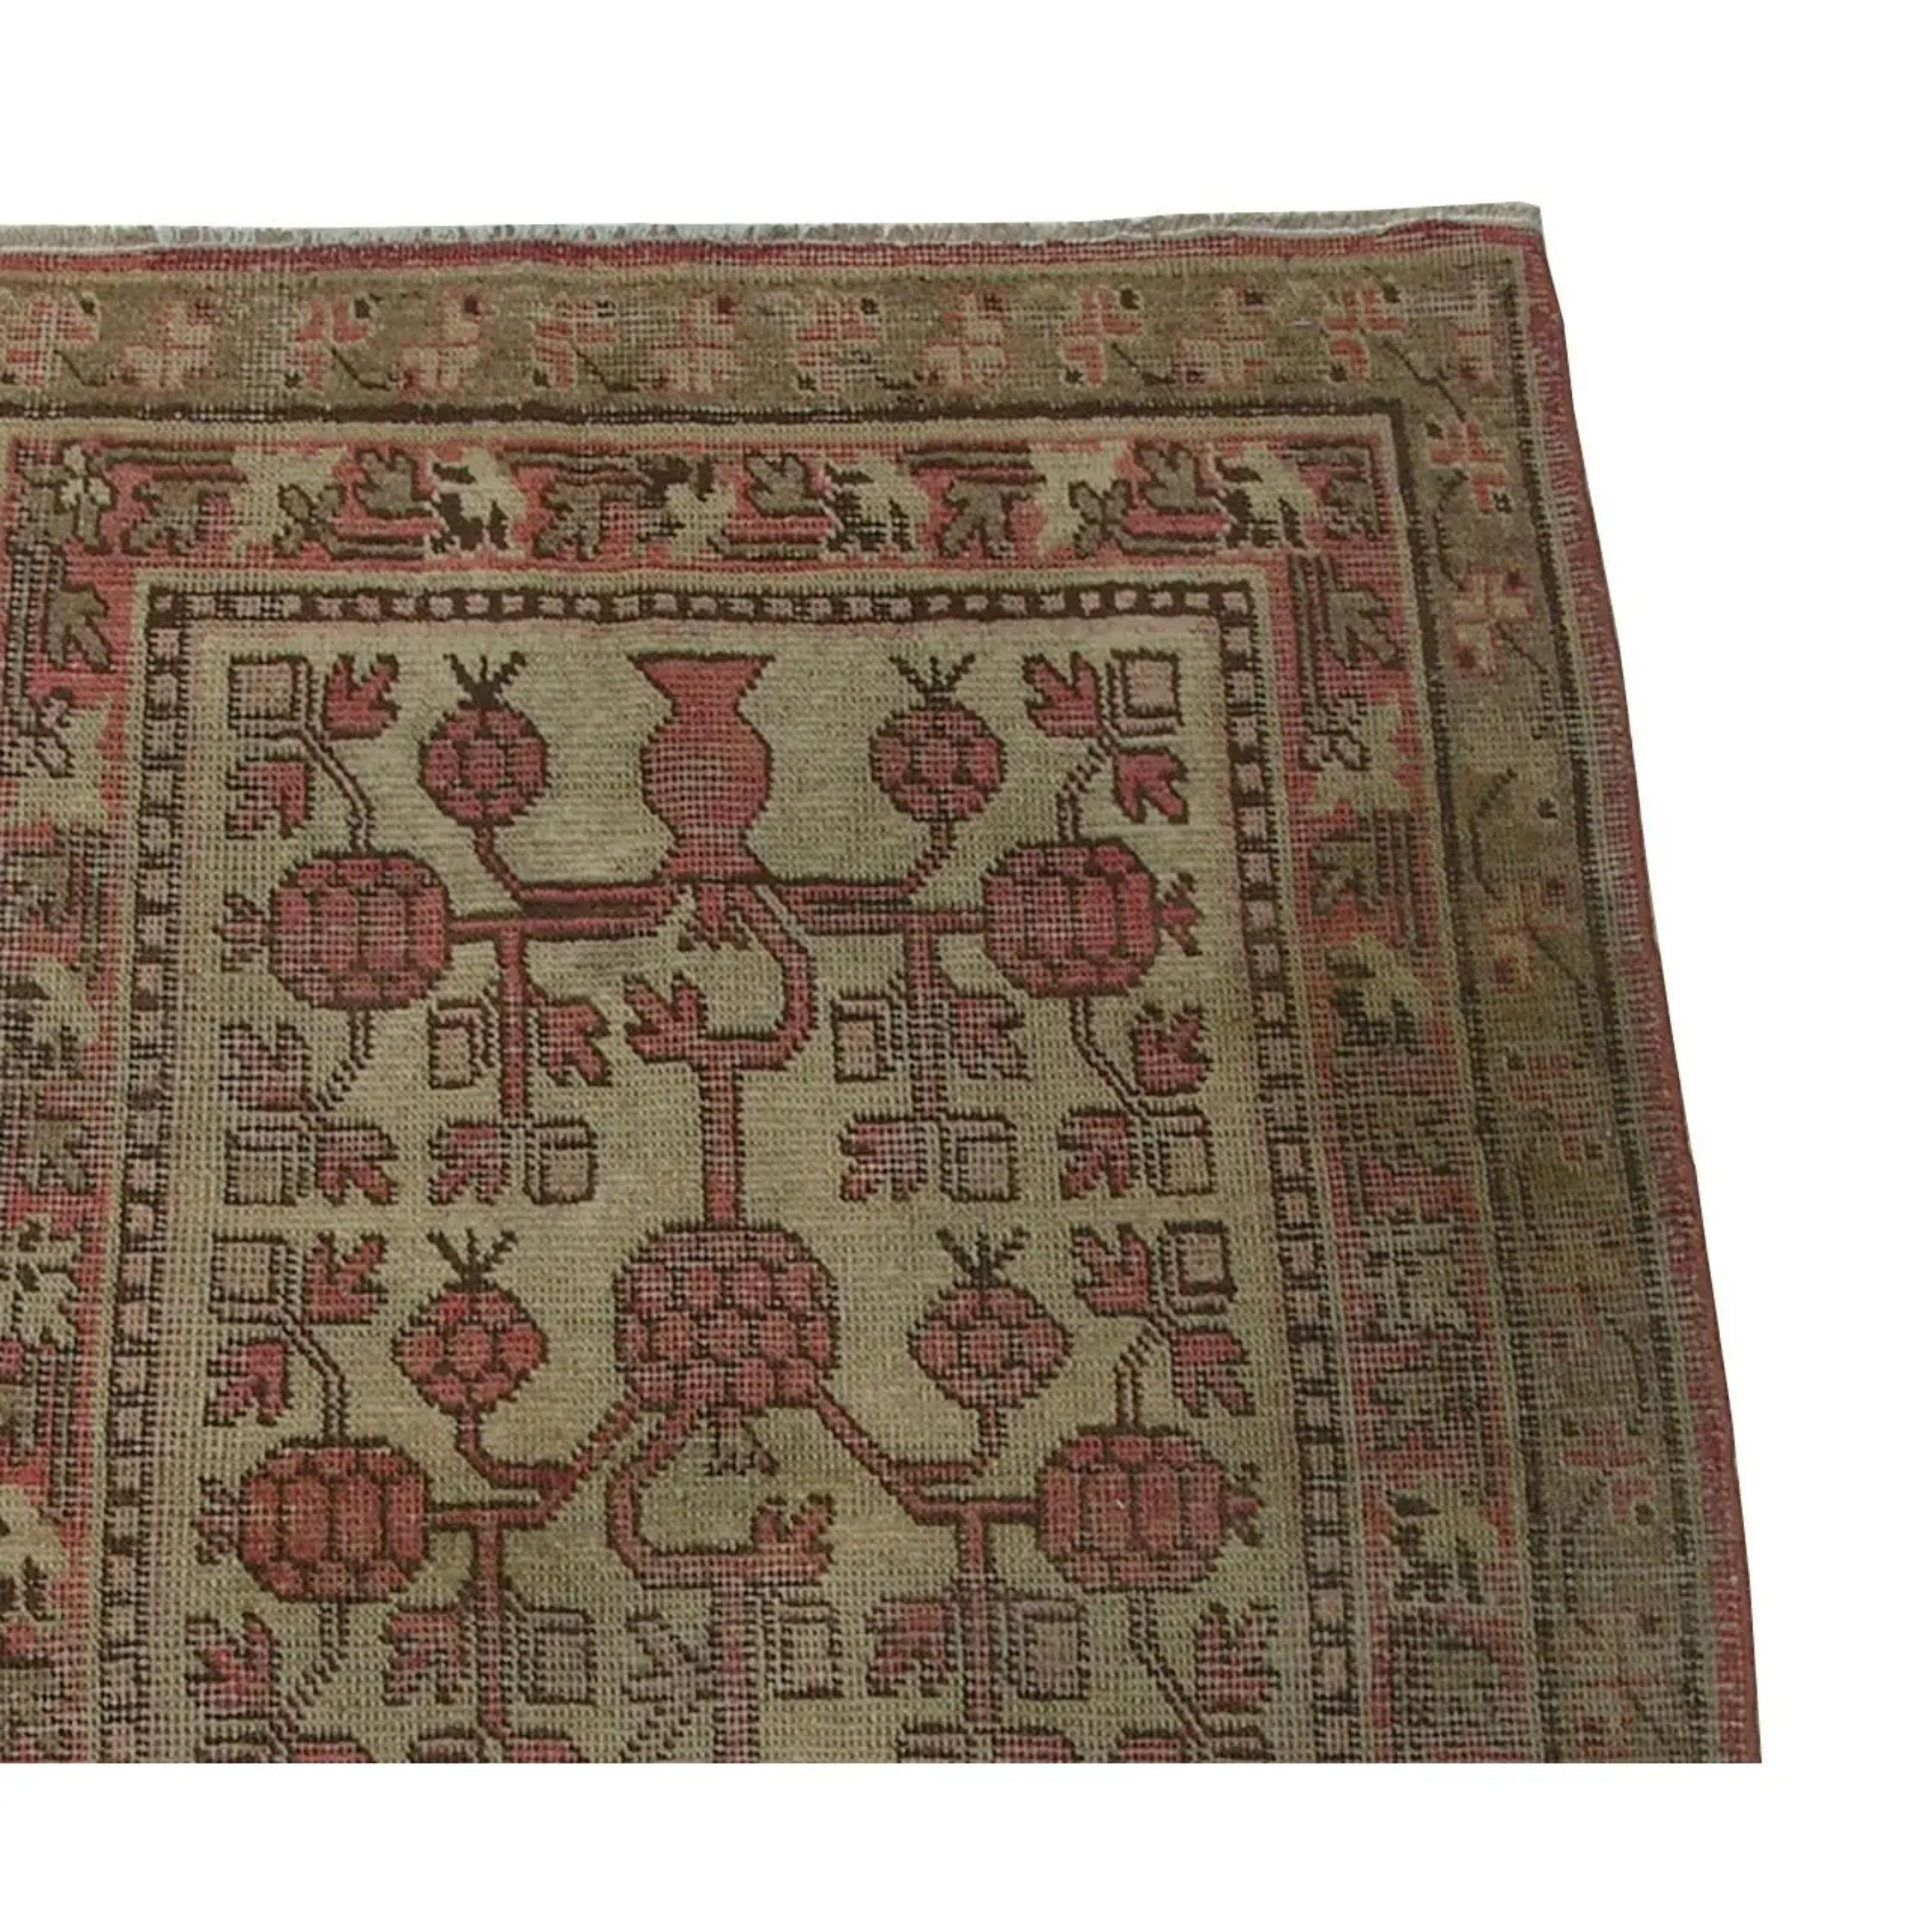 Up For Sale Is An Antique Samarkand Uzbek Tribal Rug
